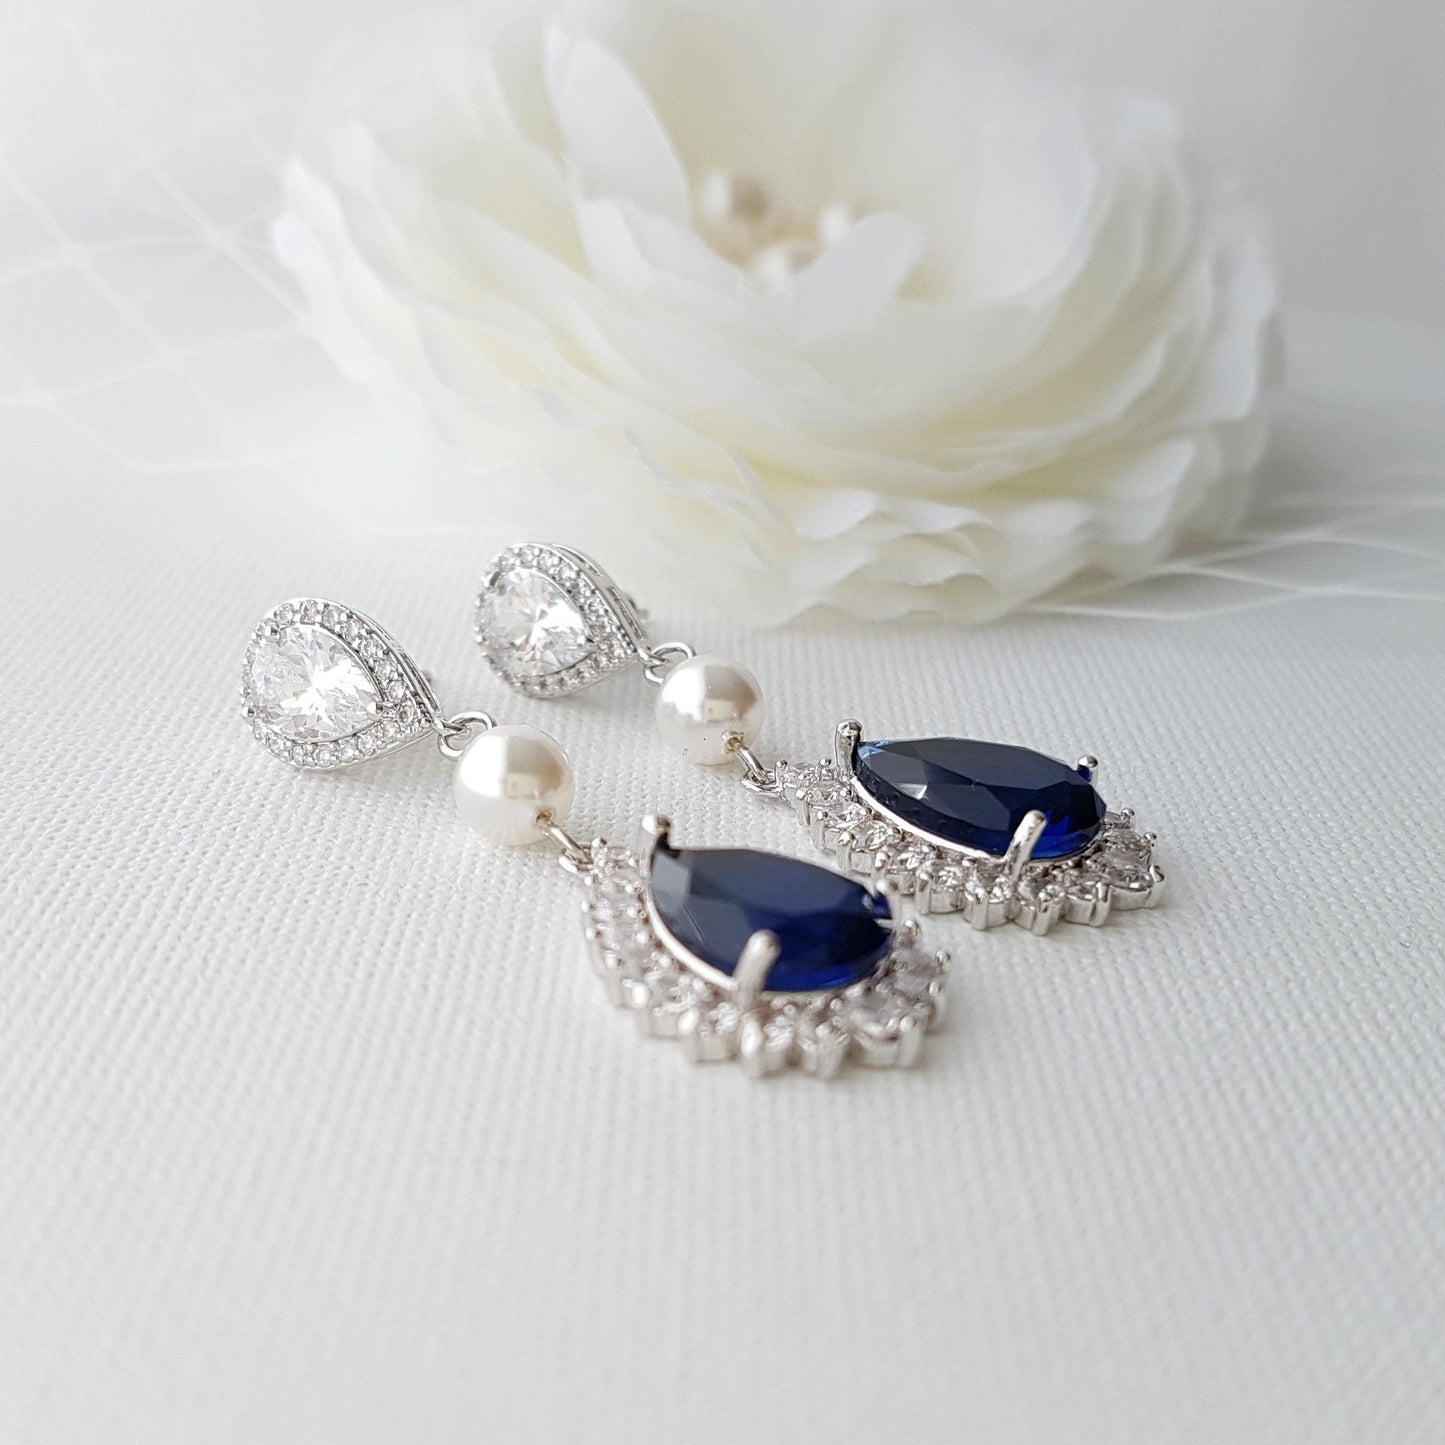 Juego de joyas de boda azul perla y cristal para novias-Aoi